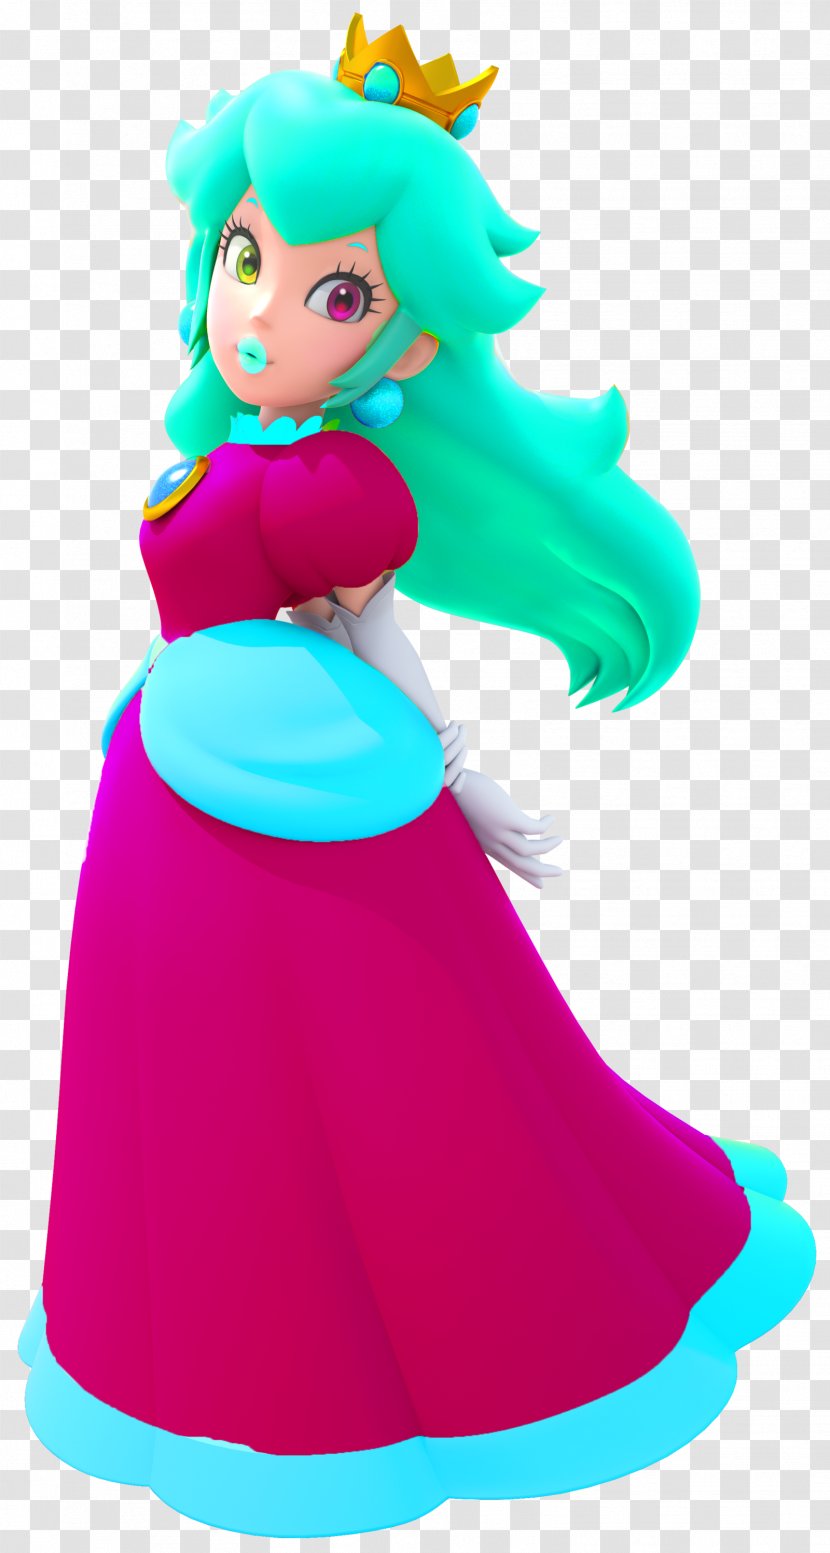 Princess Peach Super Mario Bros. Bowser - Daisy Transparent PNG